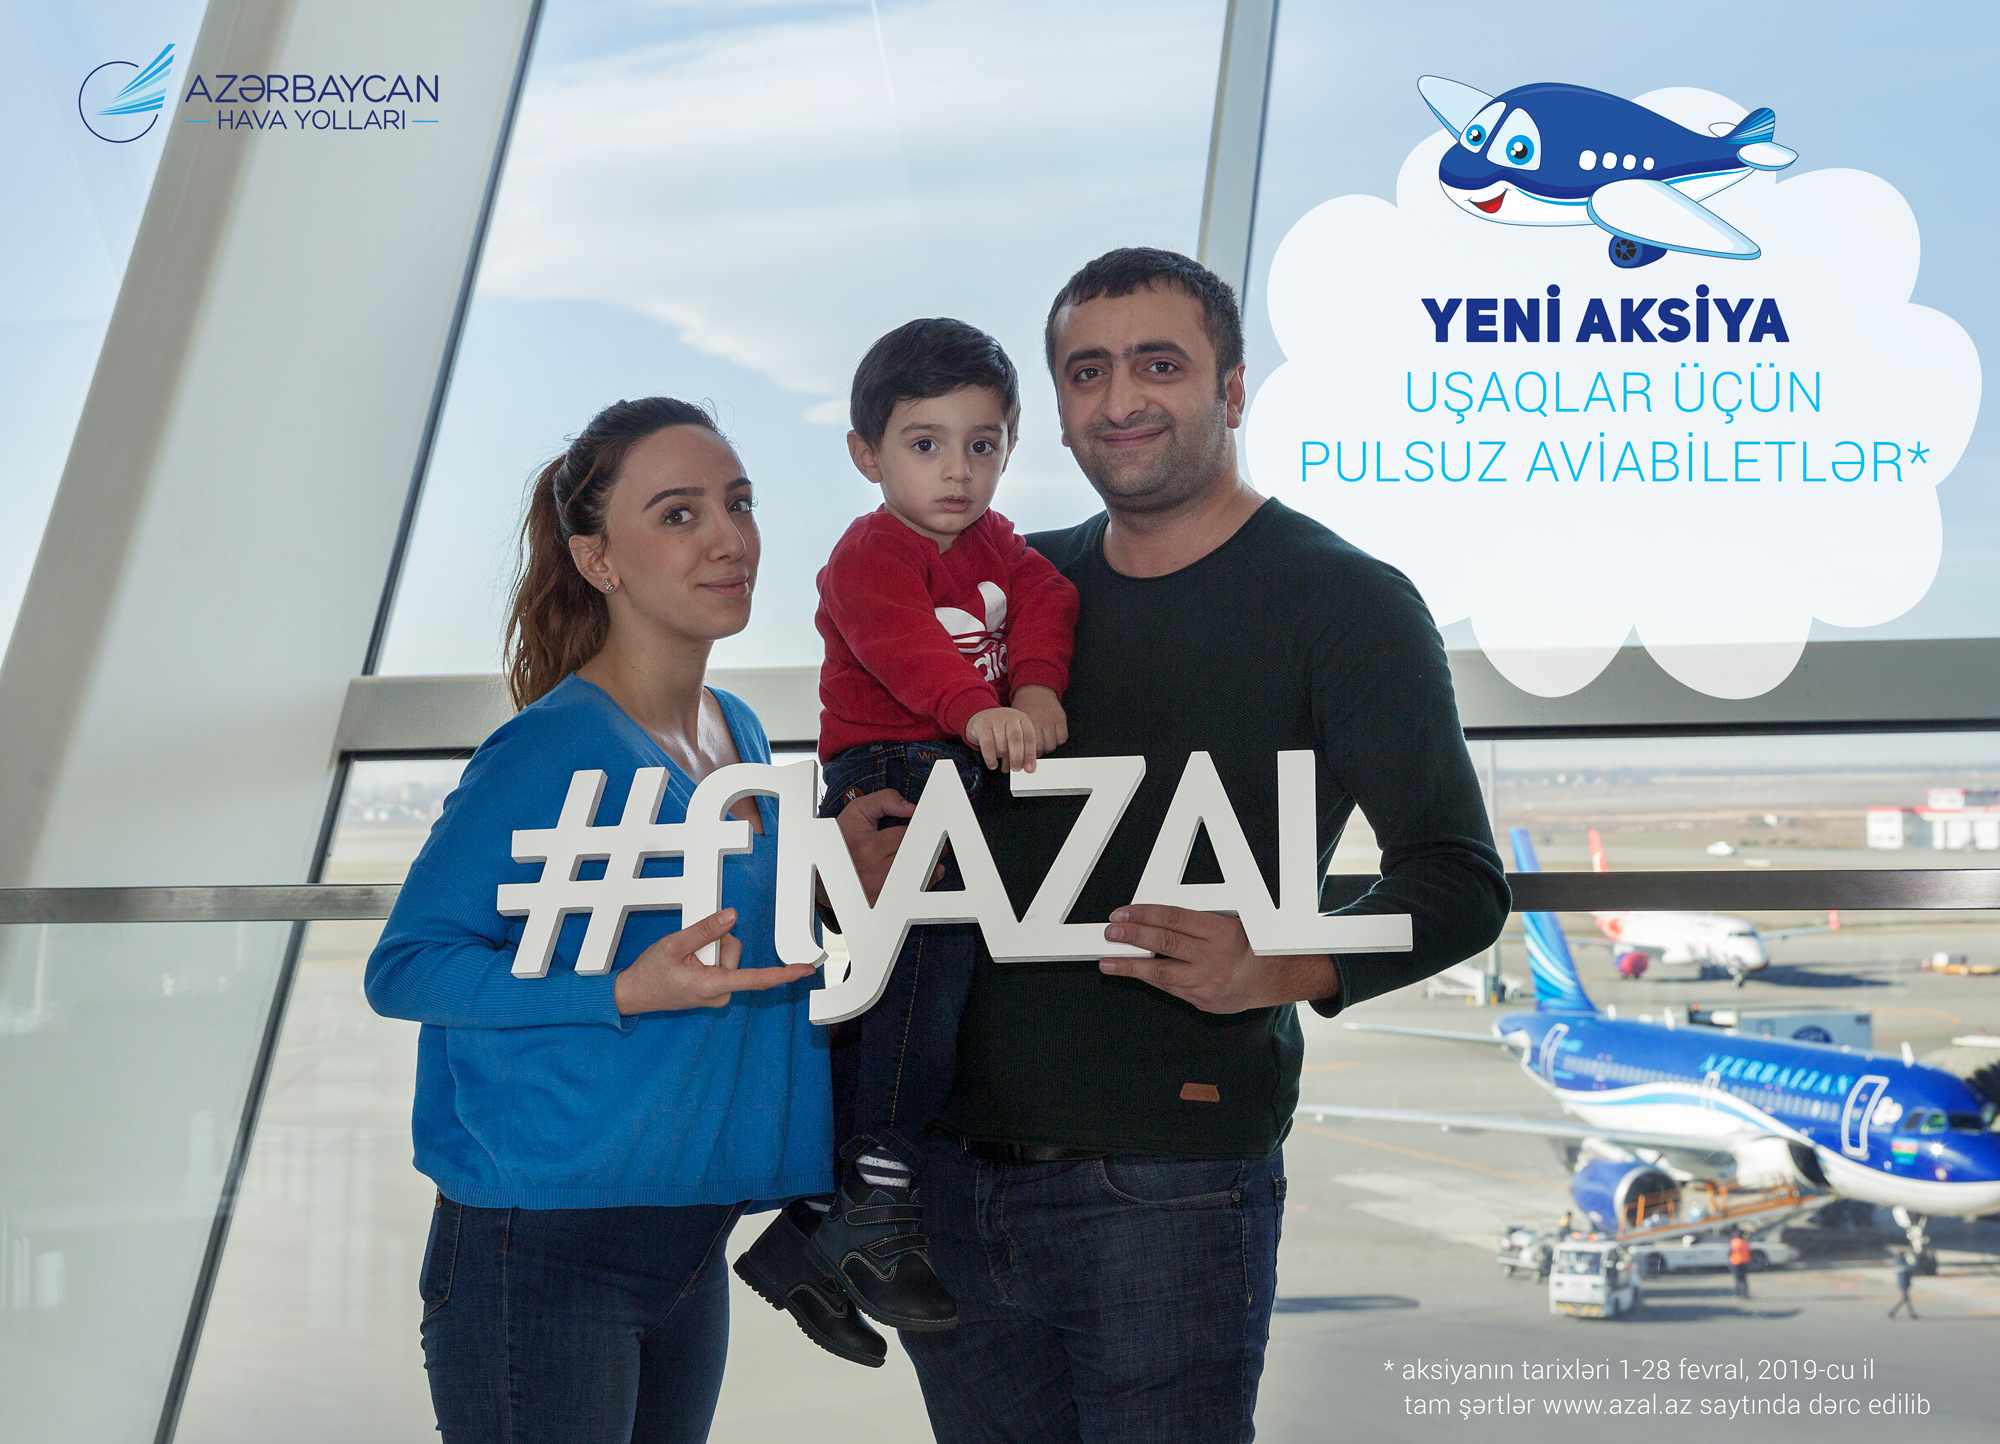 Зимняя акция от AZAL:бесплатный авиабилет детямпри путешествии с родителями